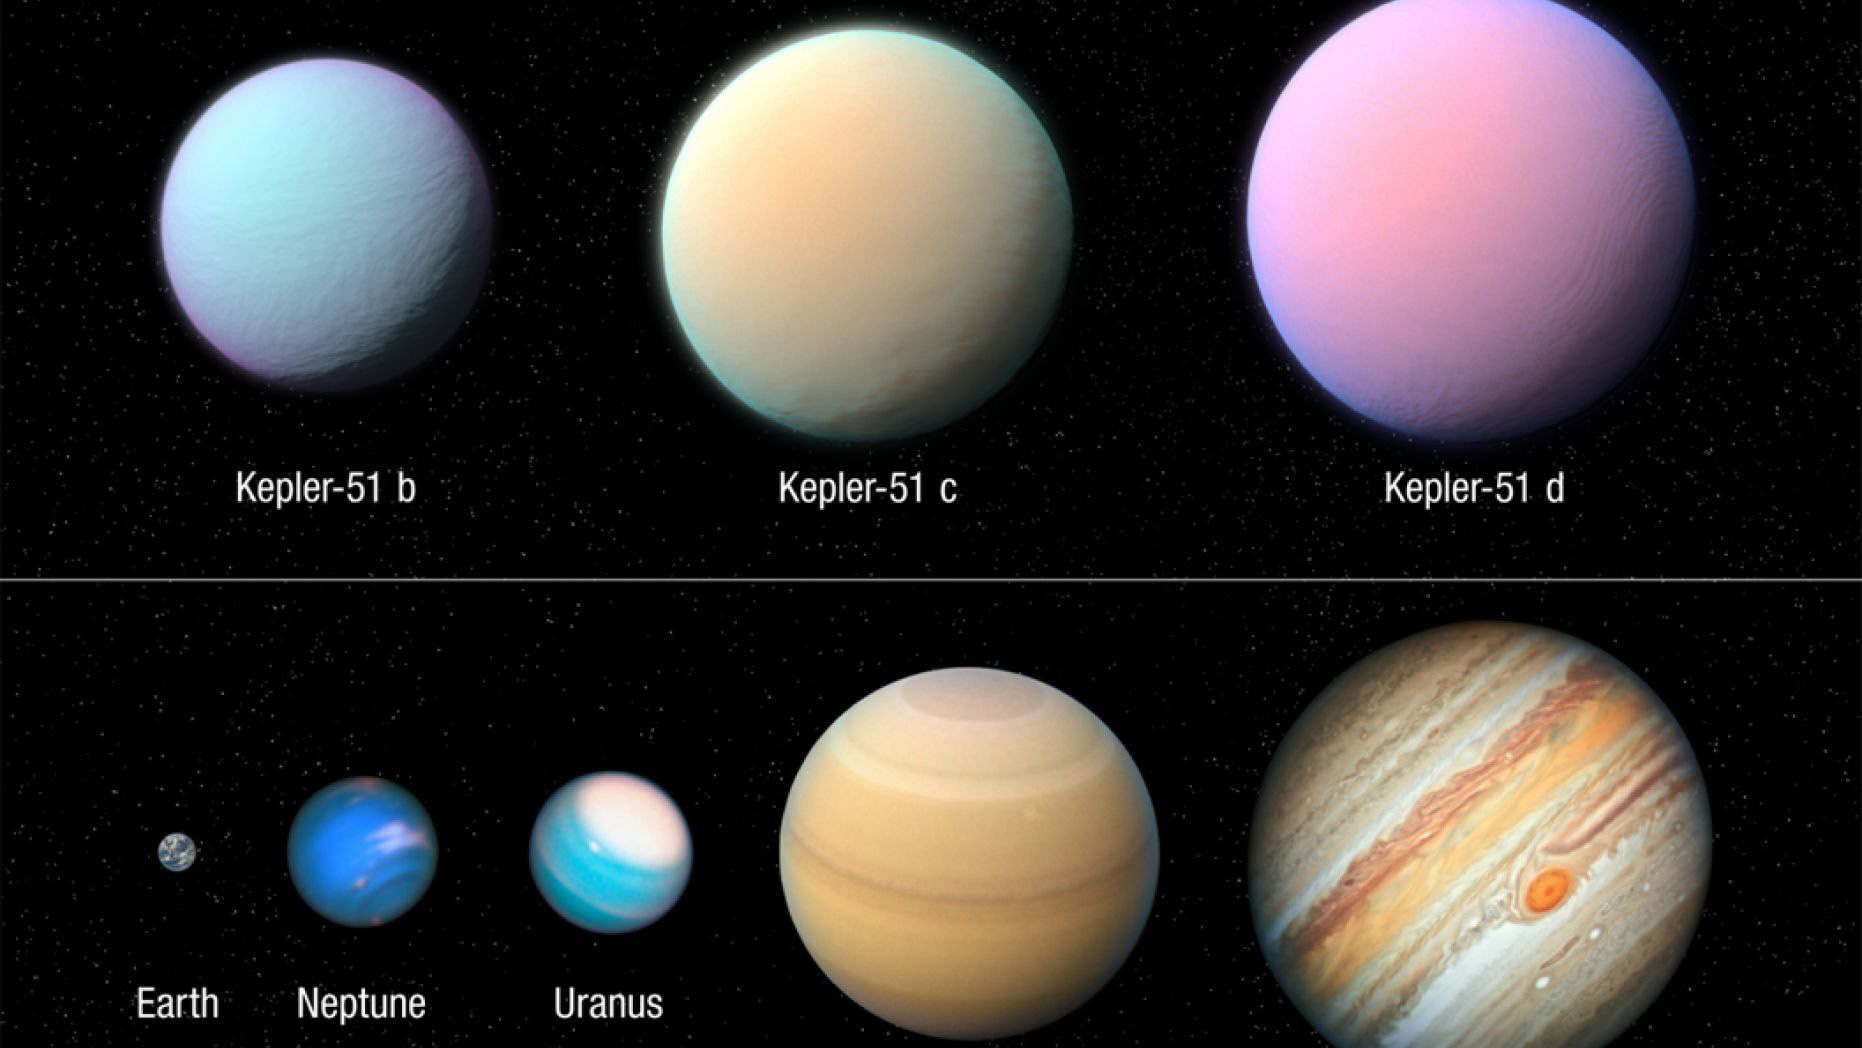 Tổng hợp hình ảnh các hành tinh trong vũ trụ với nhiều màu sắc và kiểu dáng đặc biệt